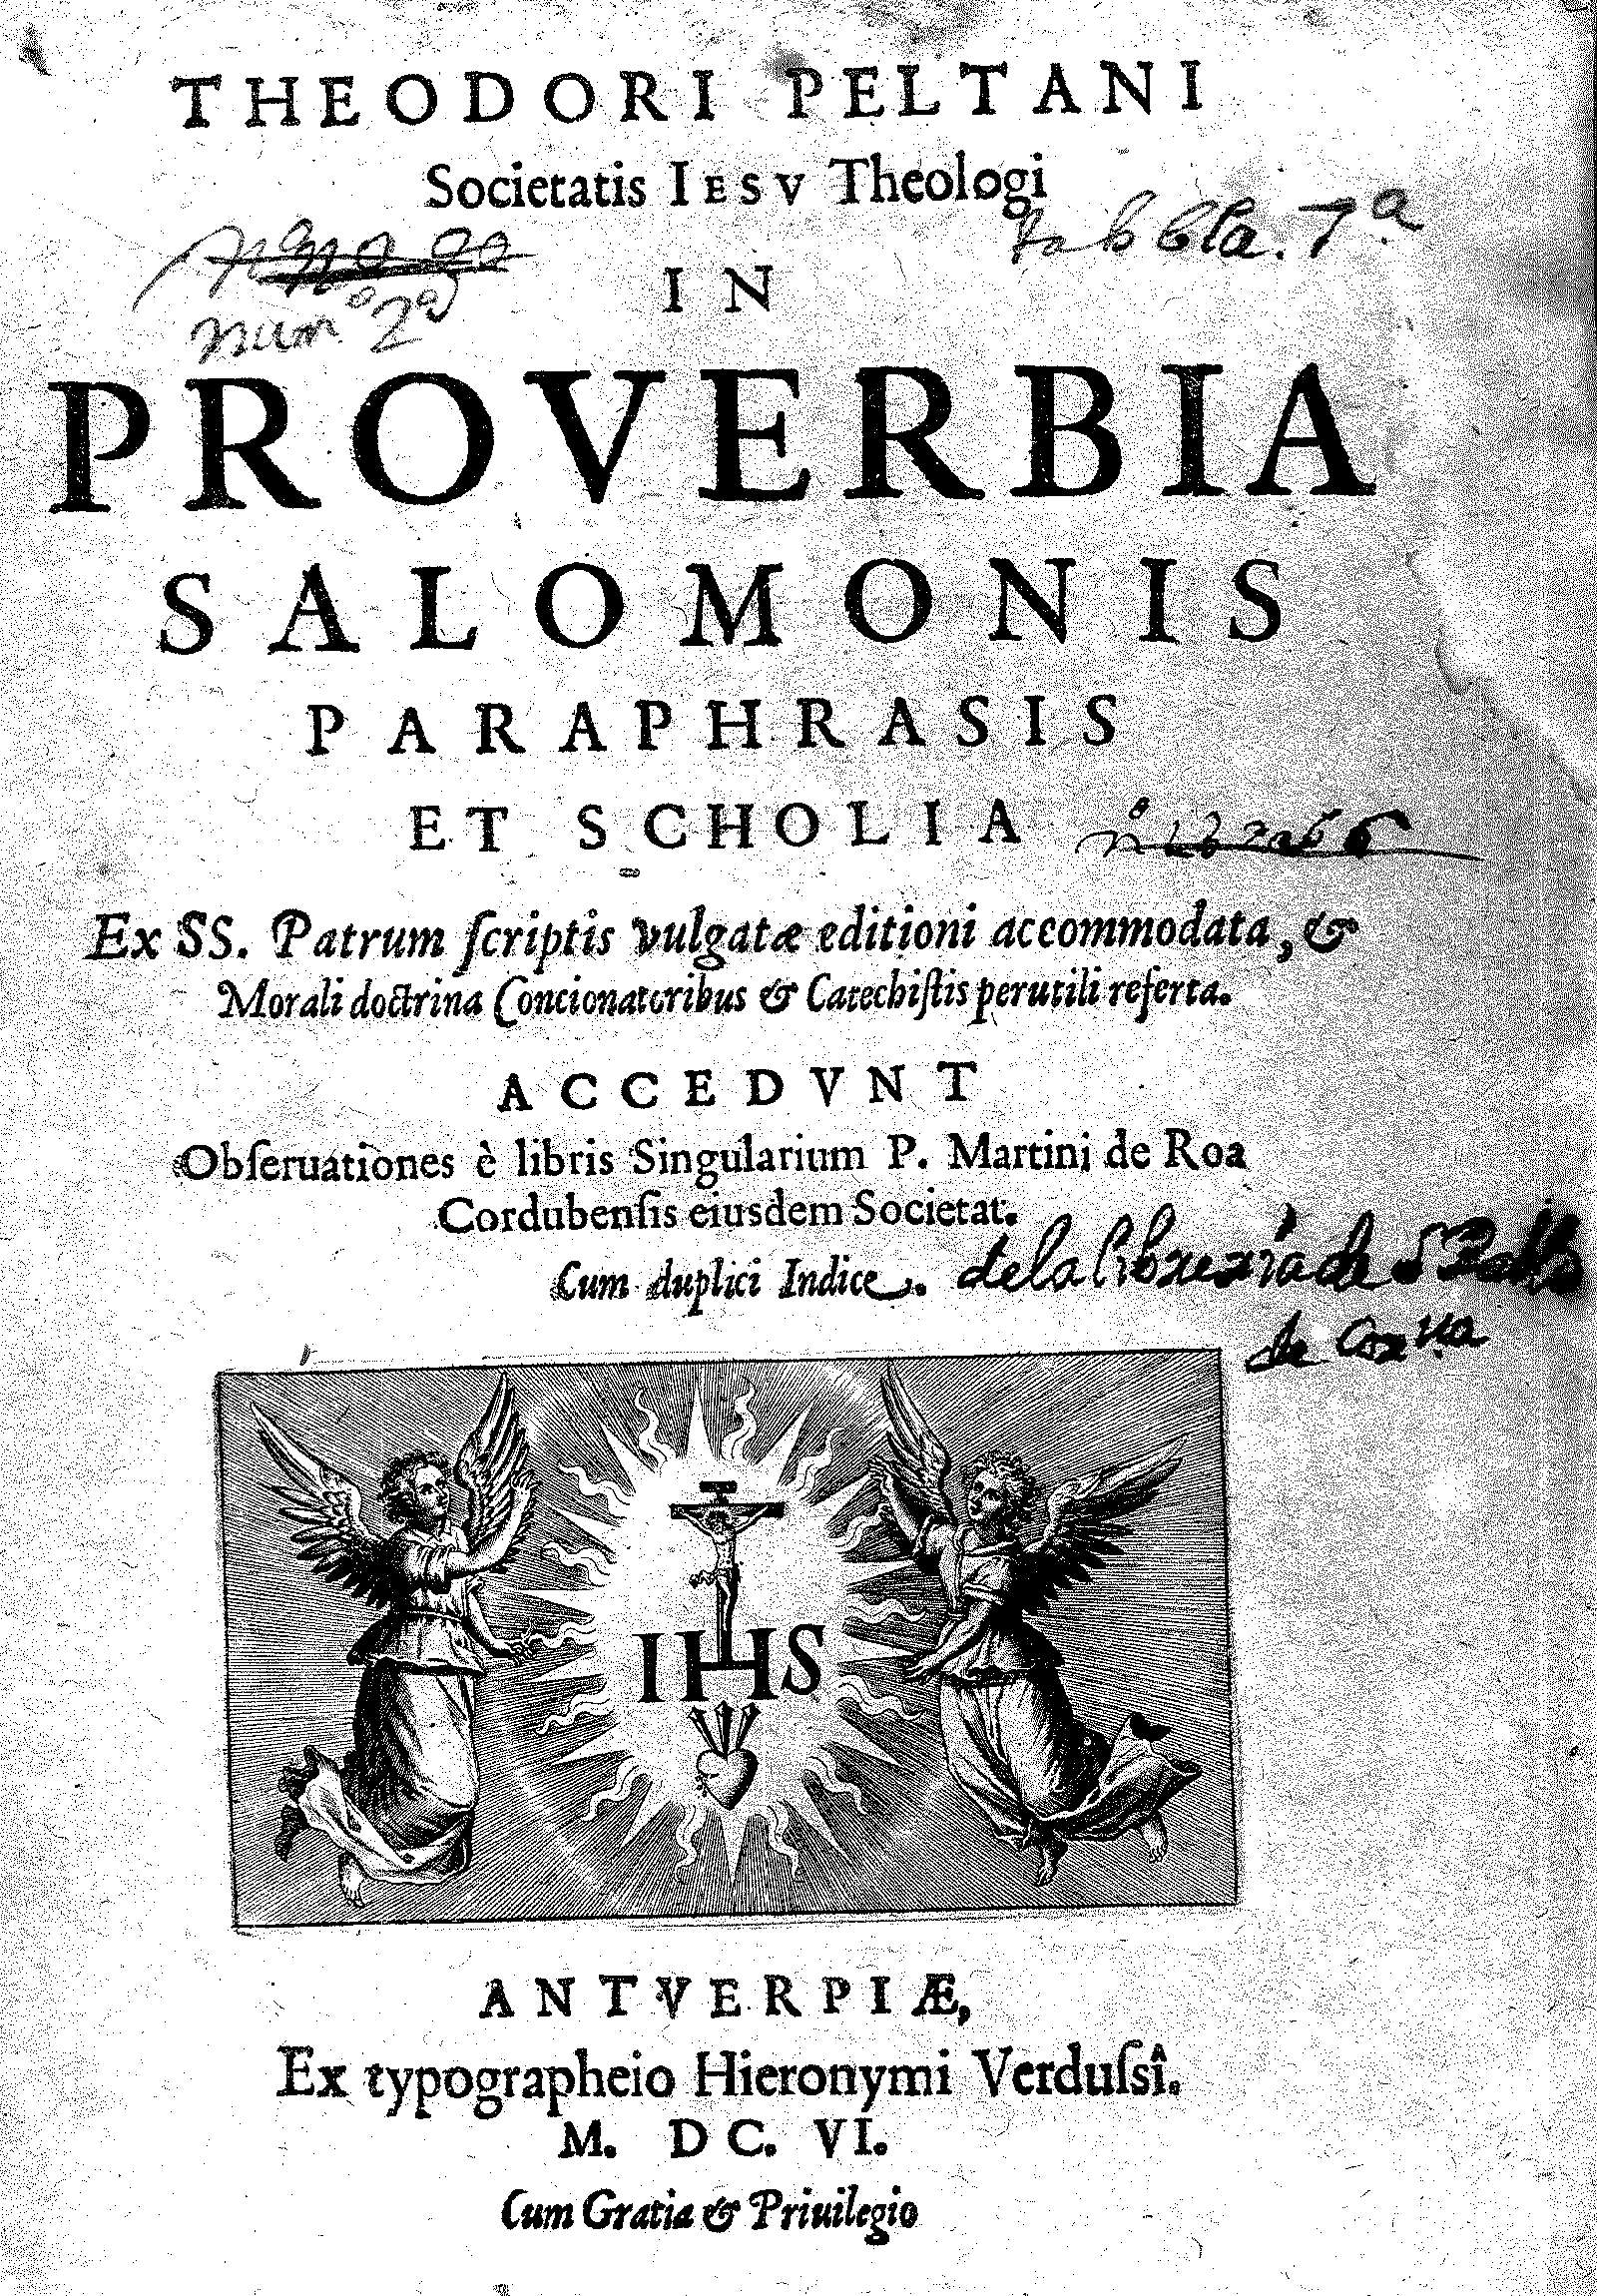 Theodori Peltani Societatis Iesu Theologi in Proverbia Salomonis paraphrasis et scholia